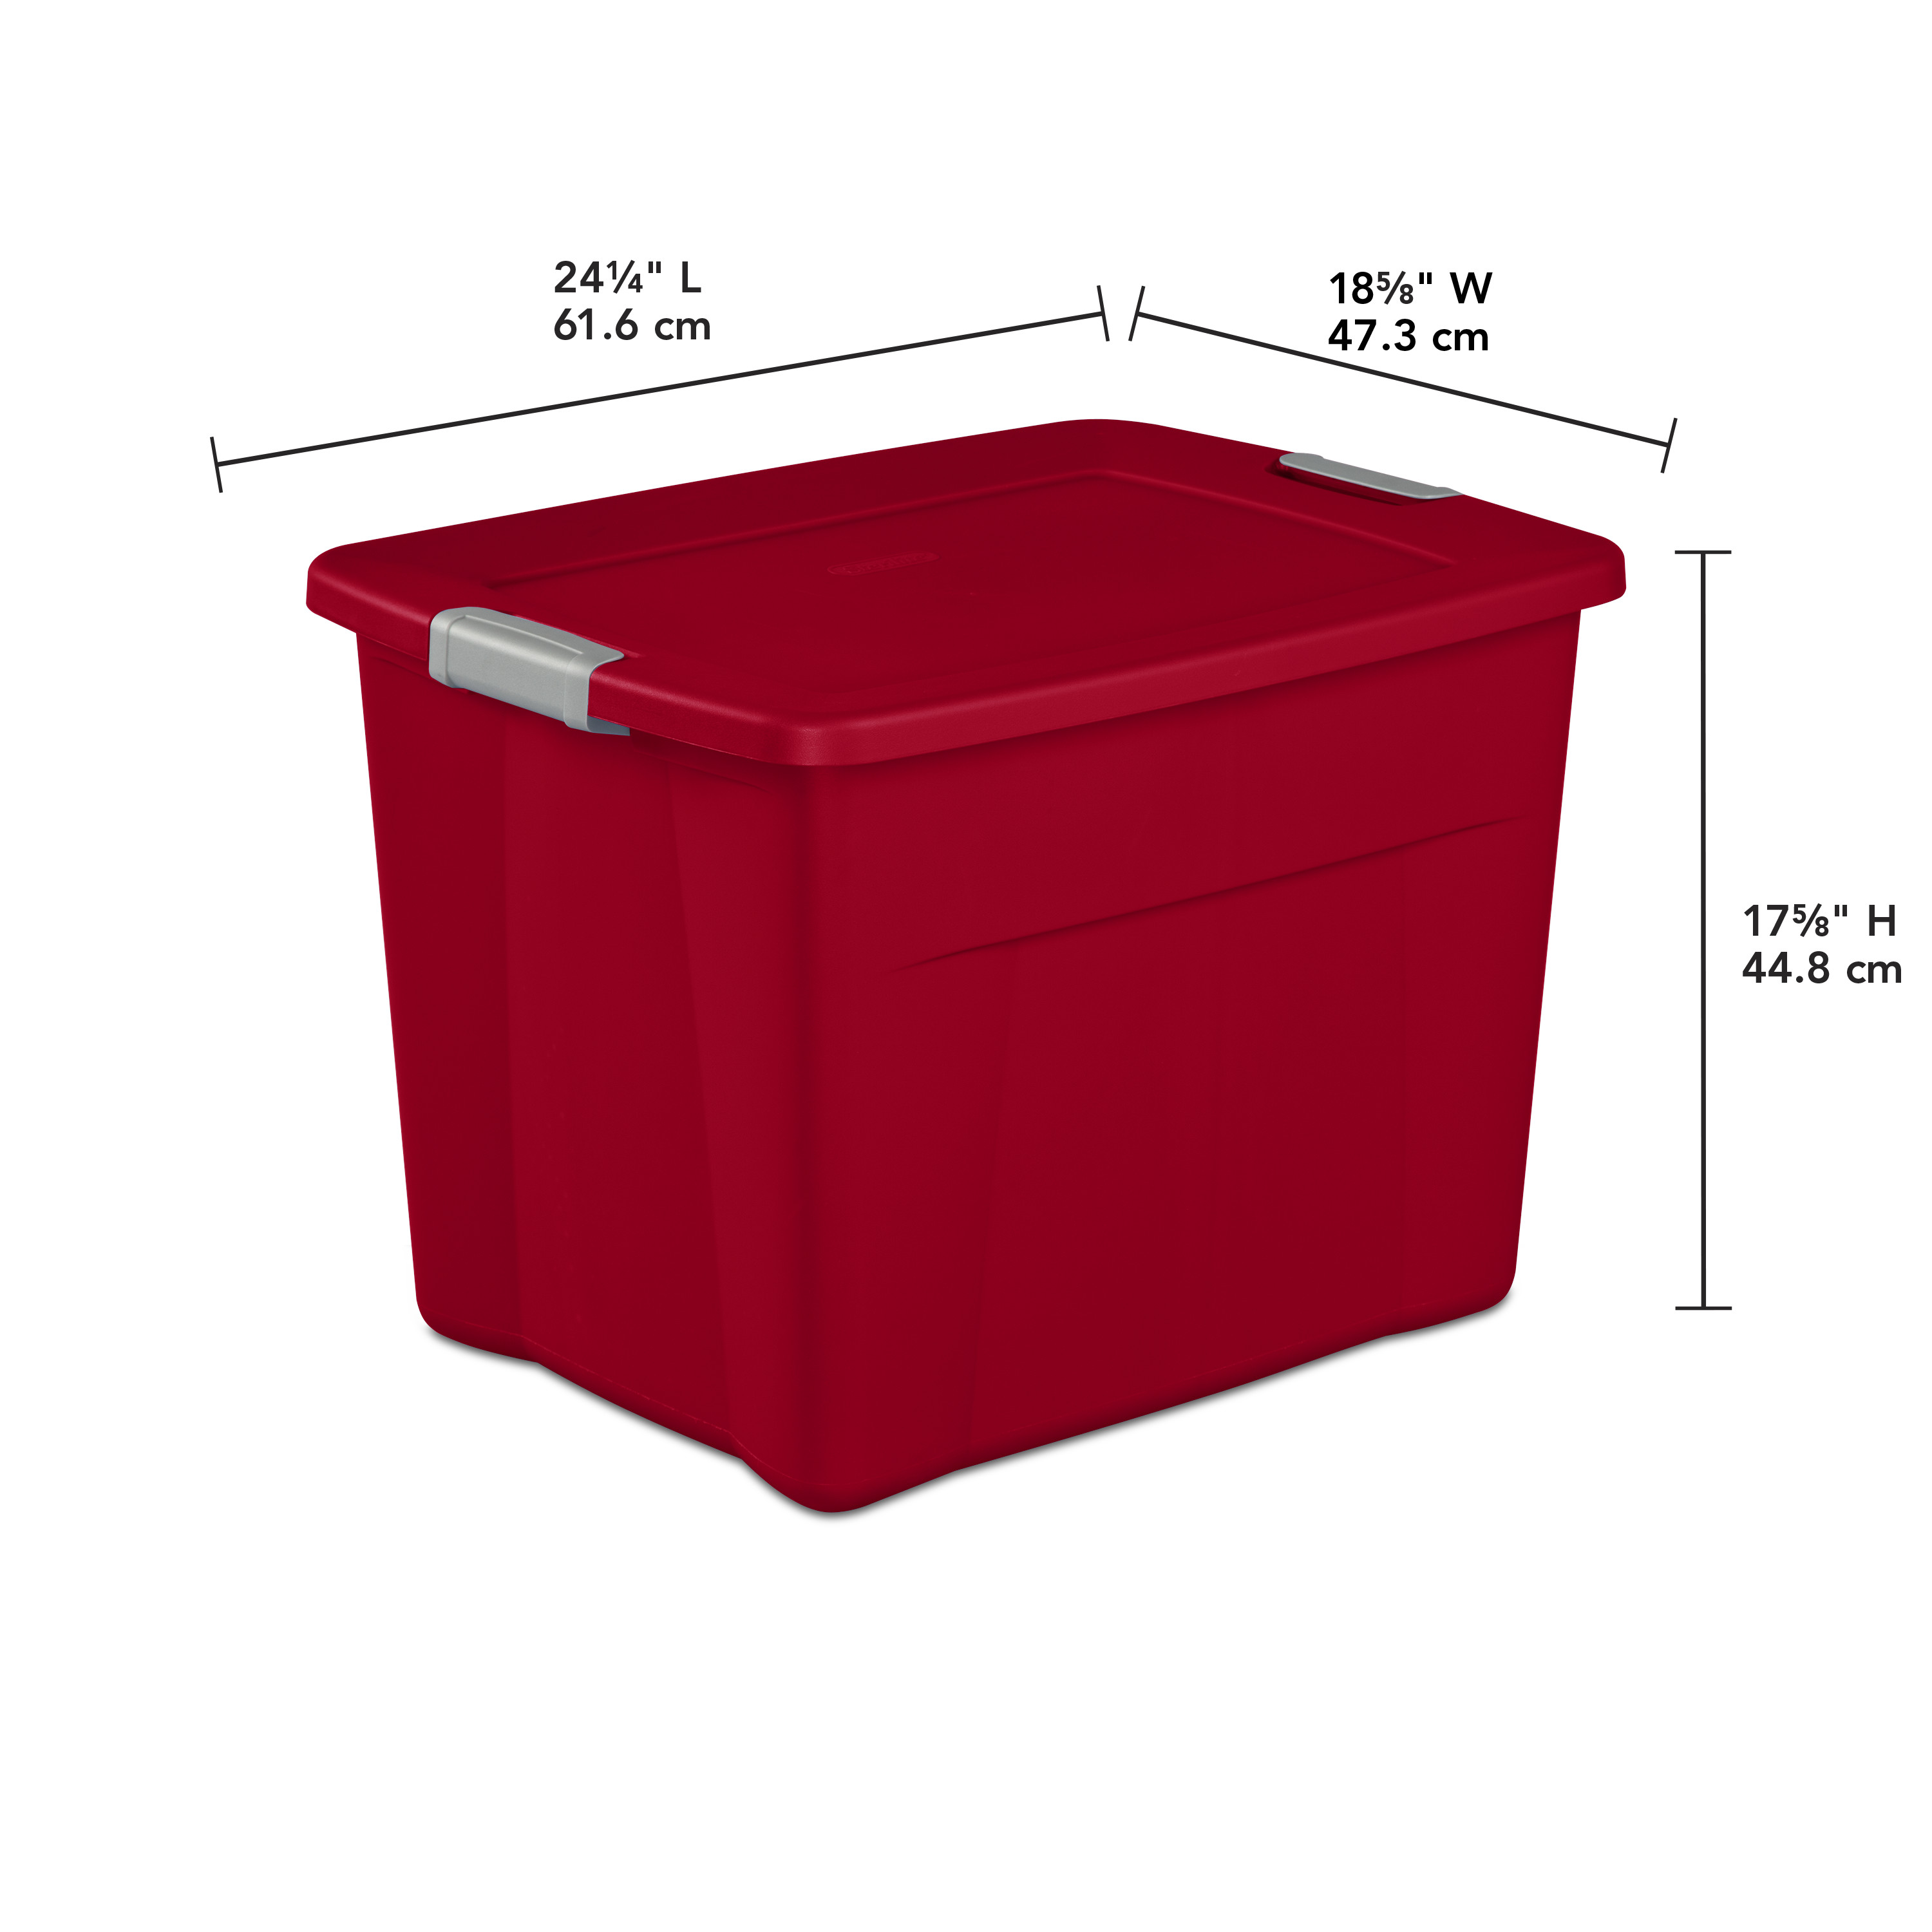 Sterilite Plastic 22 Gallon Latch Tote Infra Red Set of